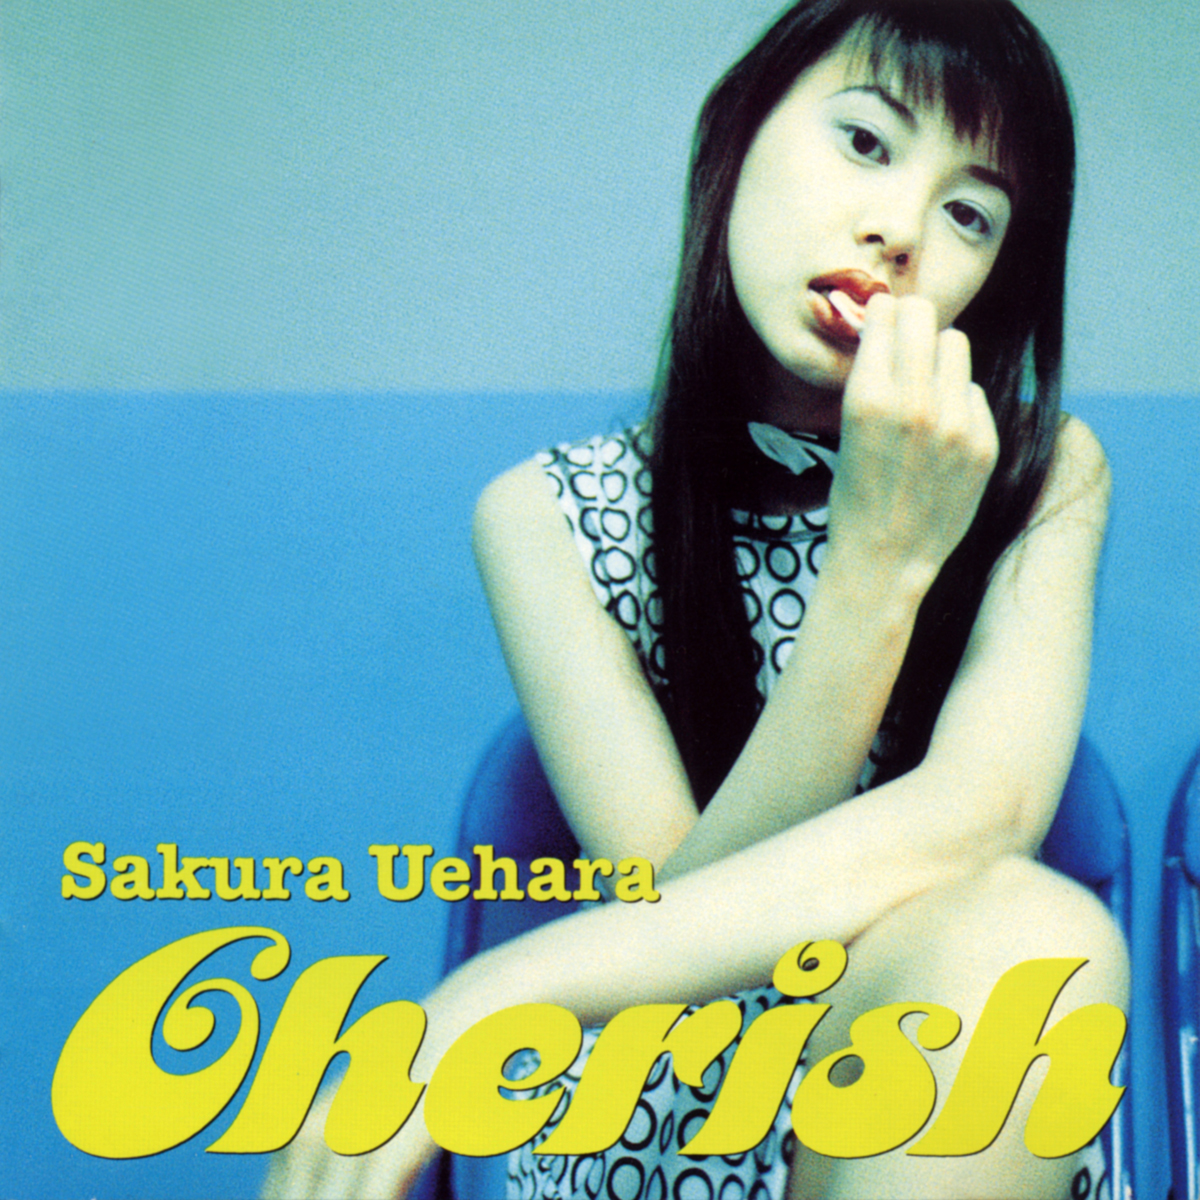 Sakura Uehara “Cherish”